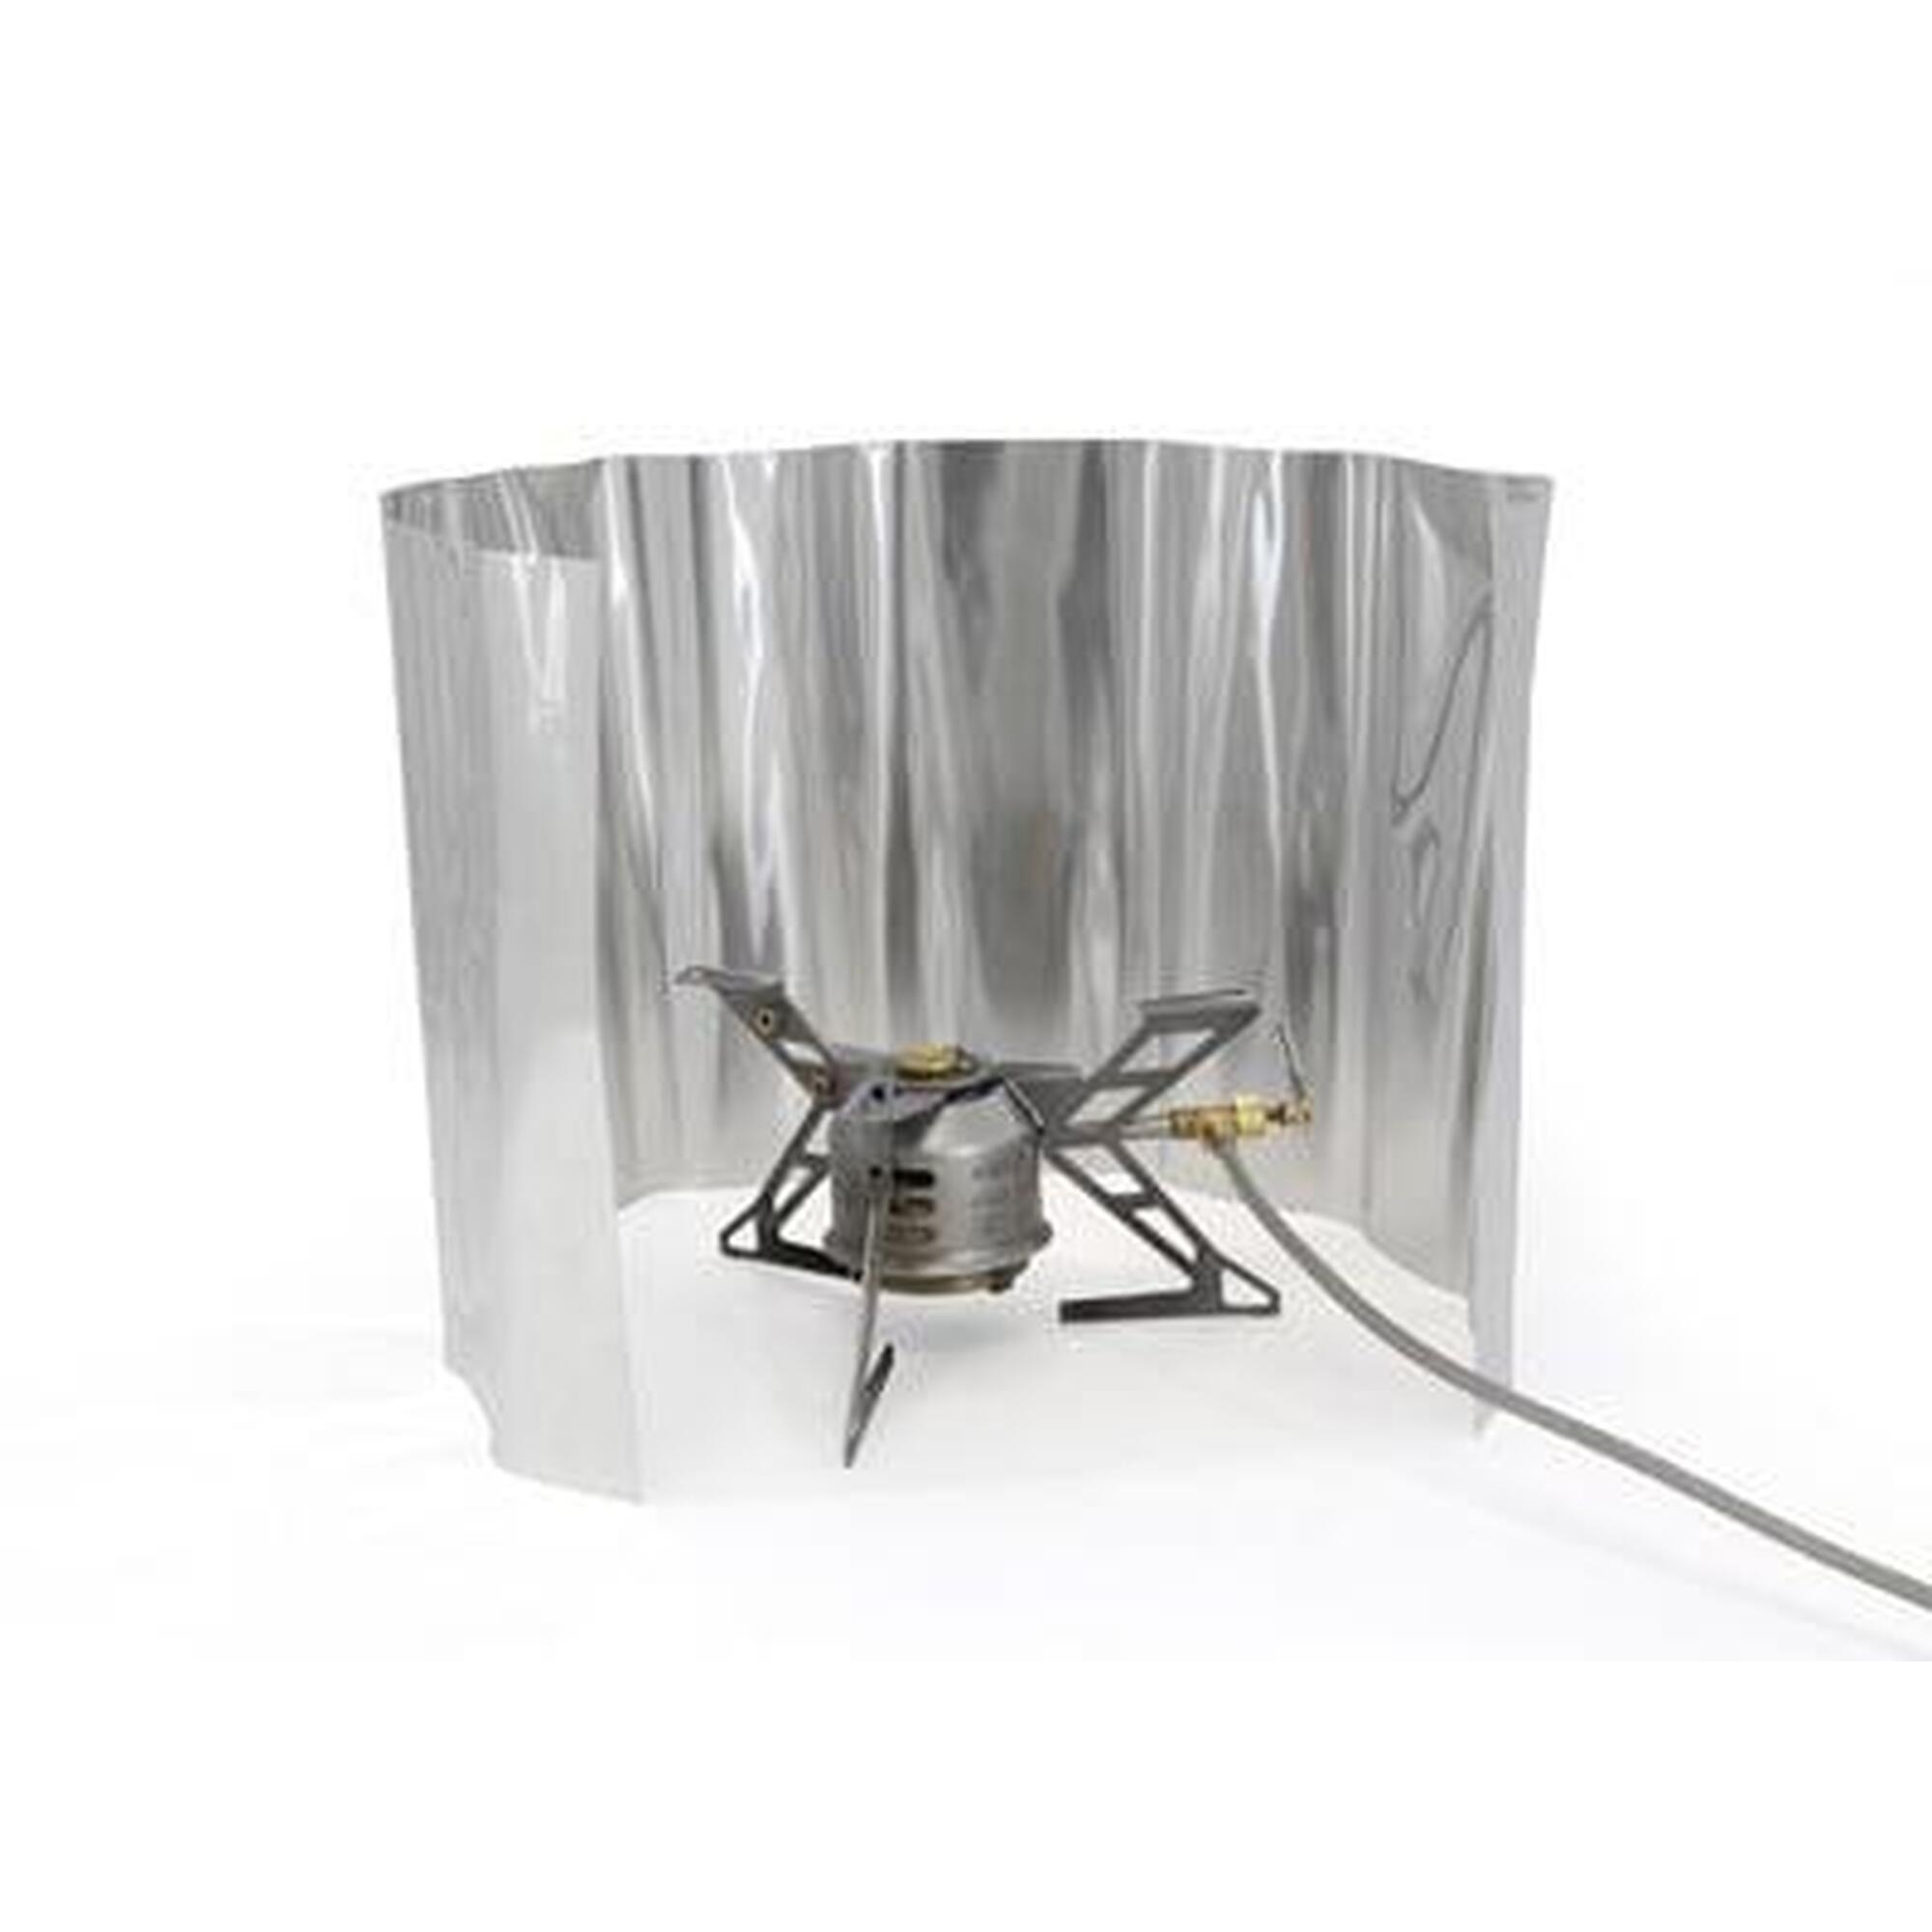 Origin Outdoors Aluminium Pare-brise (Enroulable) 24cm